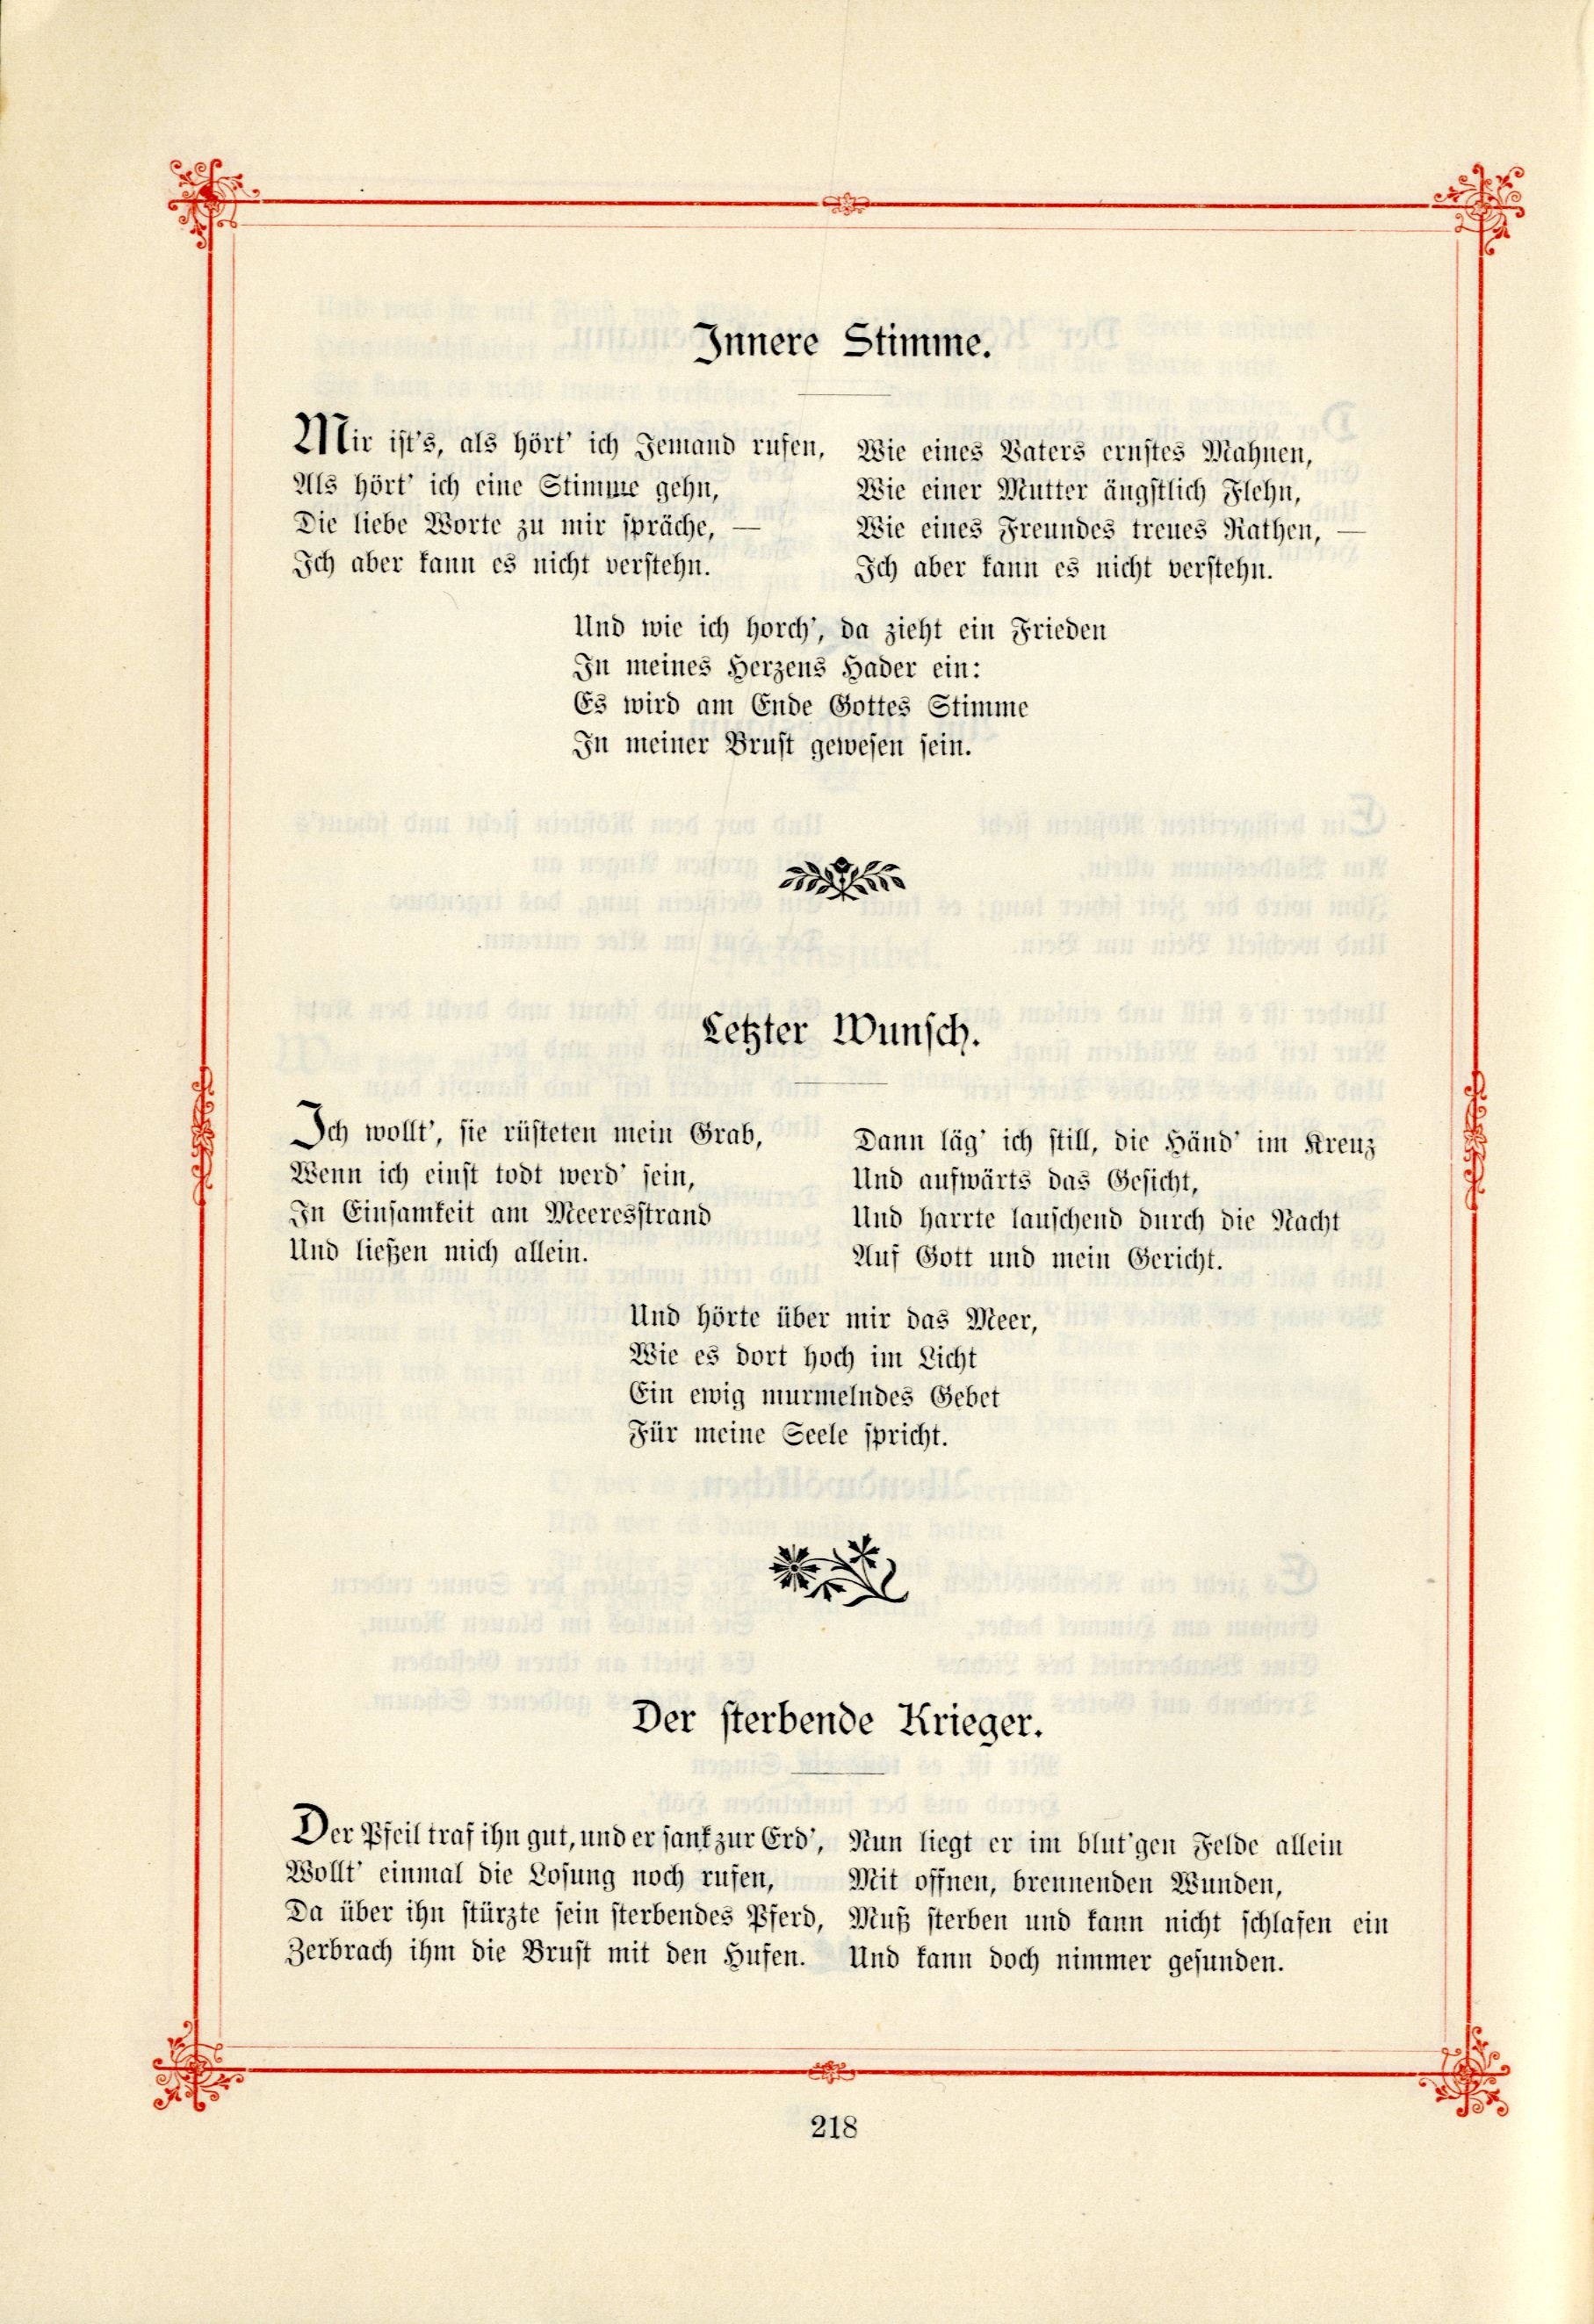 Das Baltische Dichterbuch (1895) | 264. (218) Main body of text